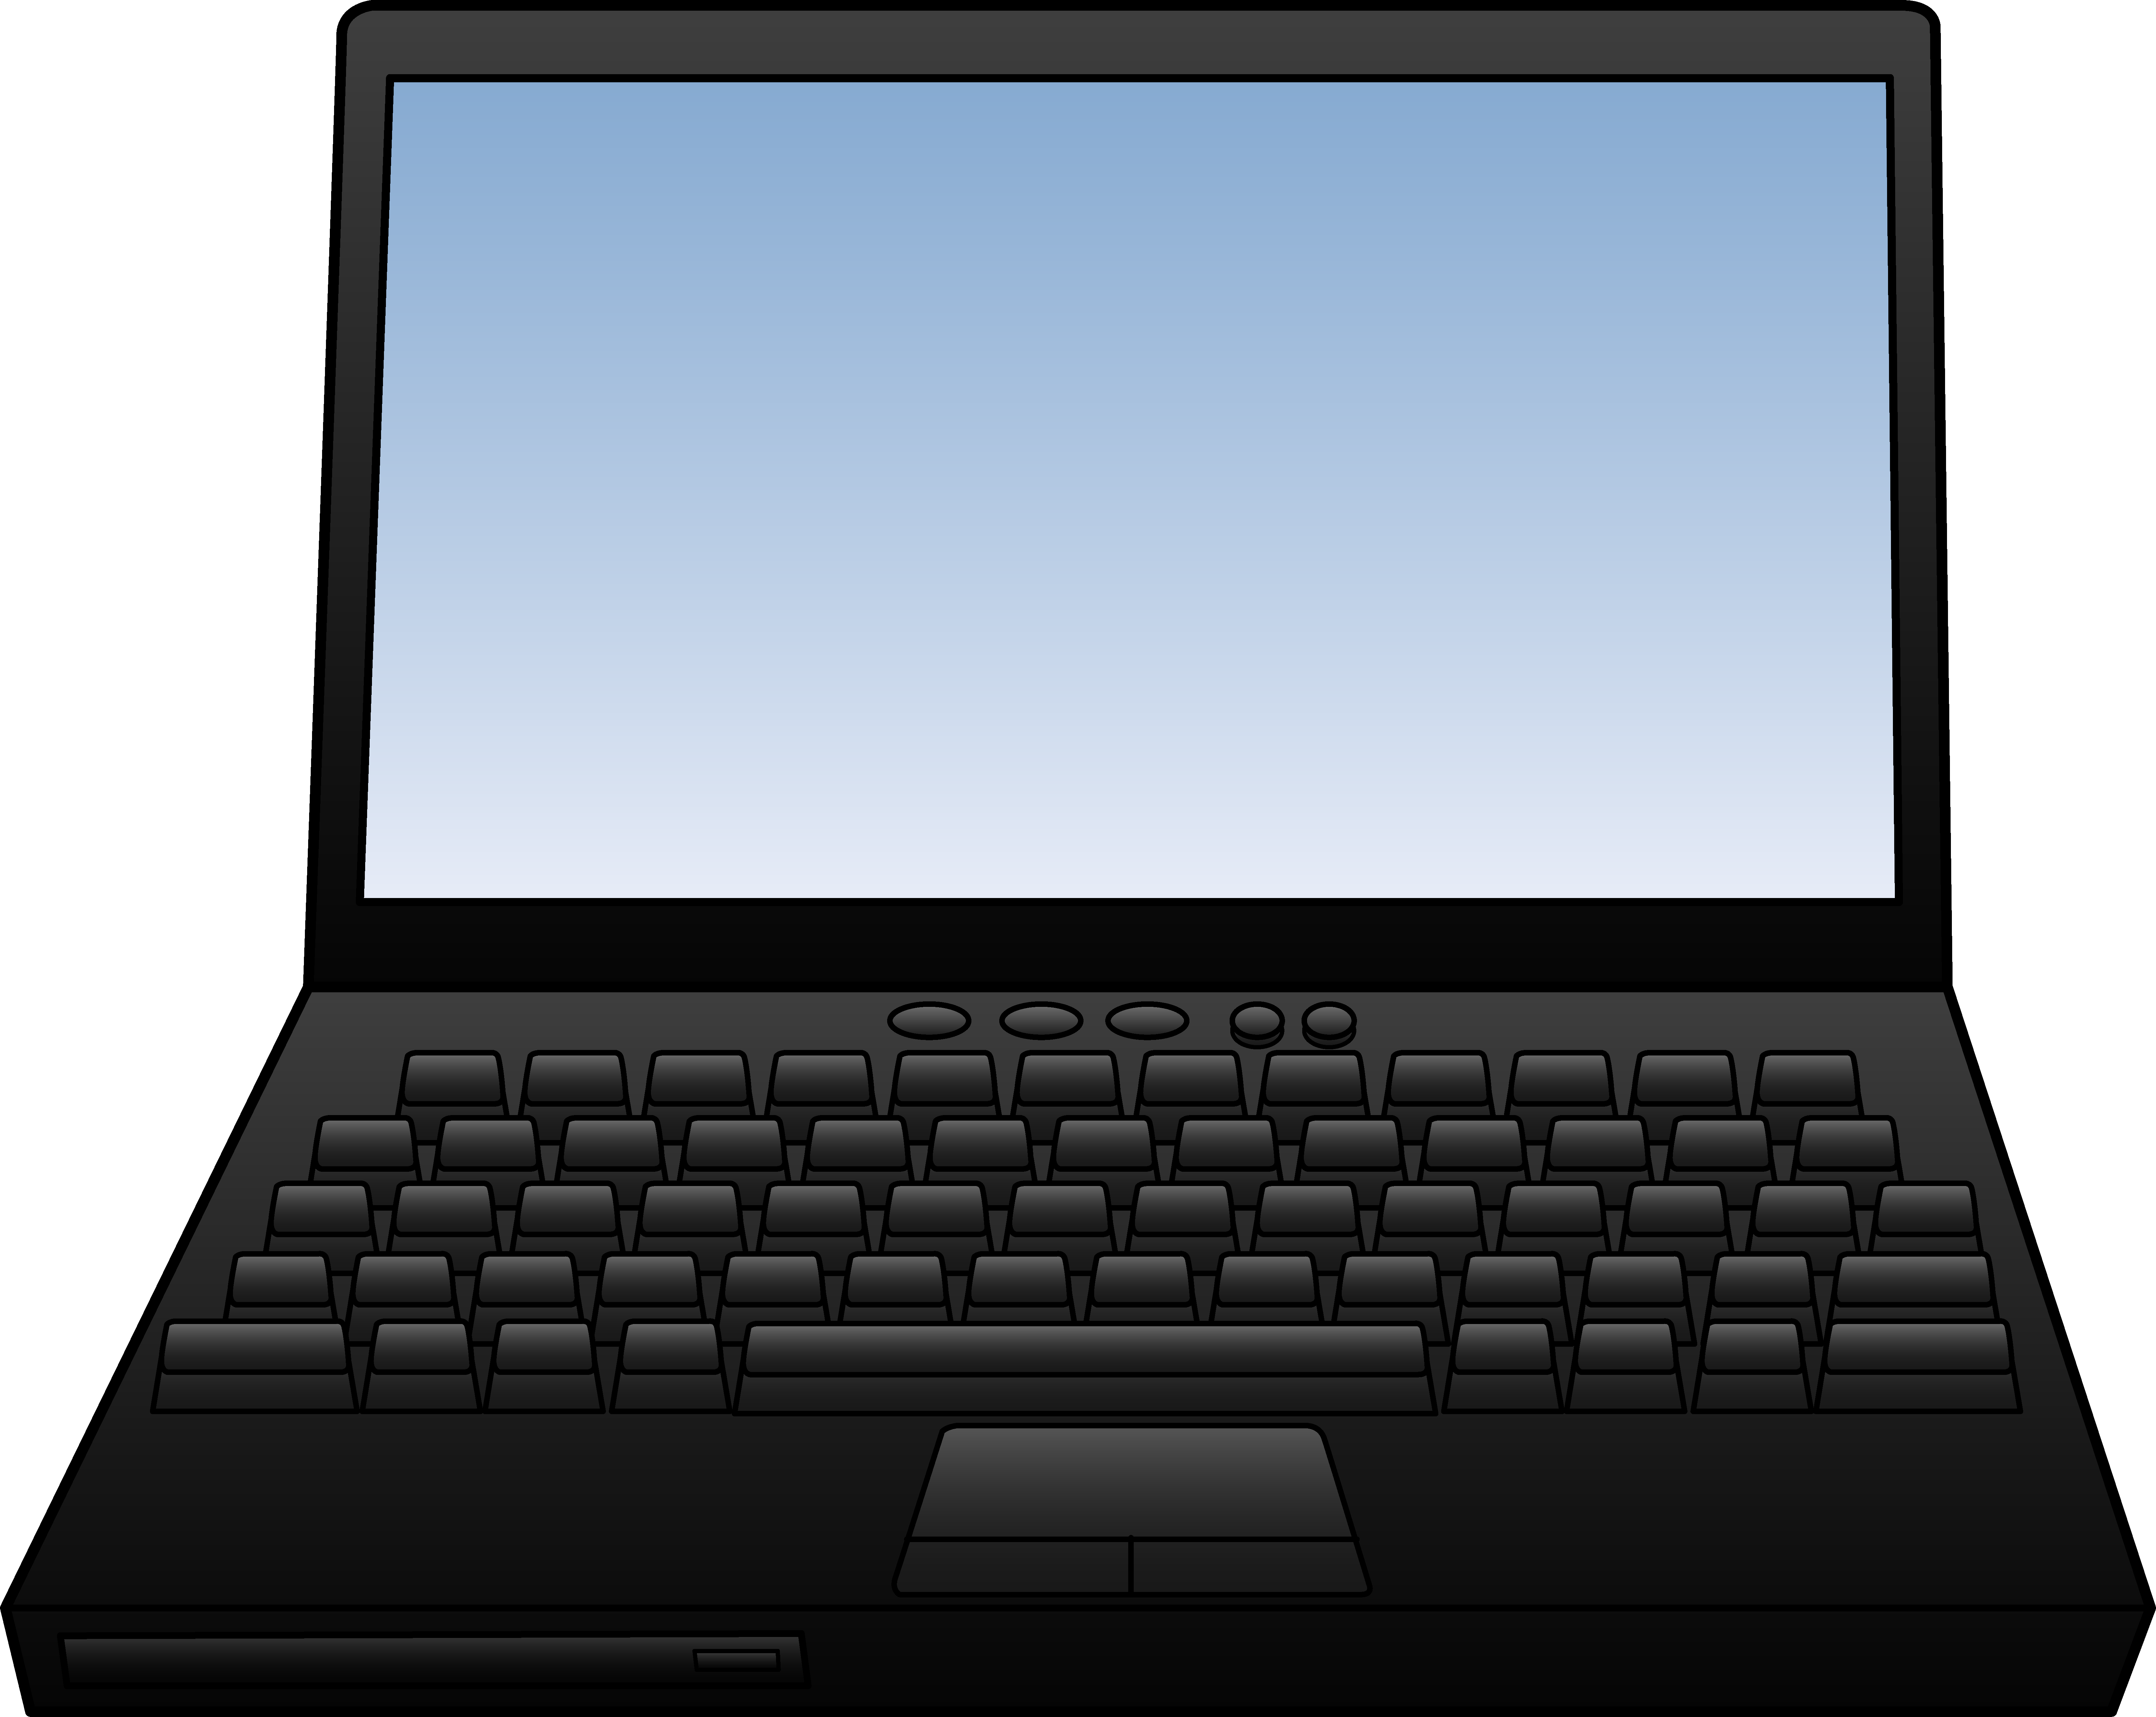 Ноутбук картинка. Ноутбук без фона. Ноутбук иллюстрация. Компьютер клипарт. Ноутбук для презентации.